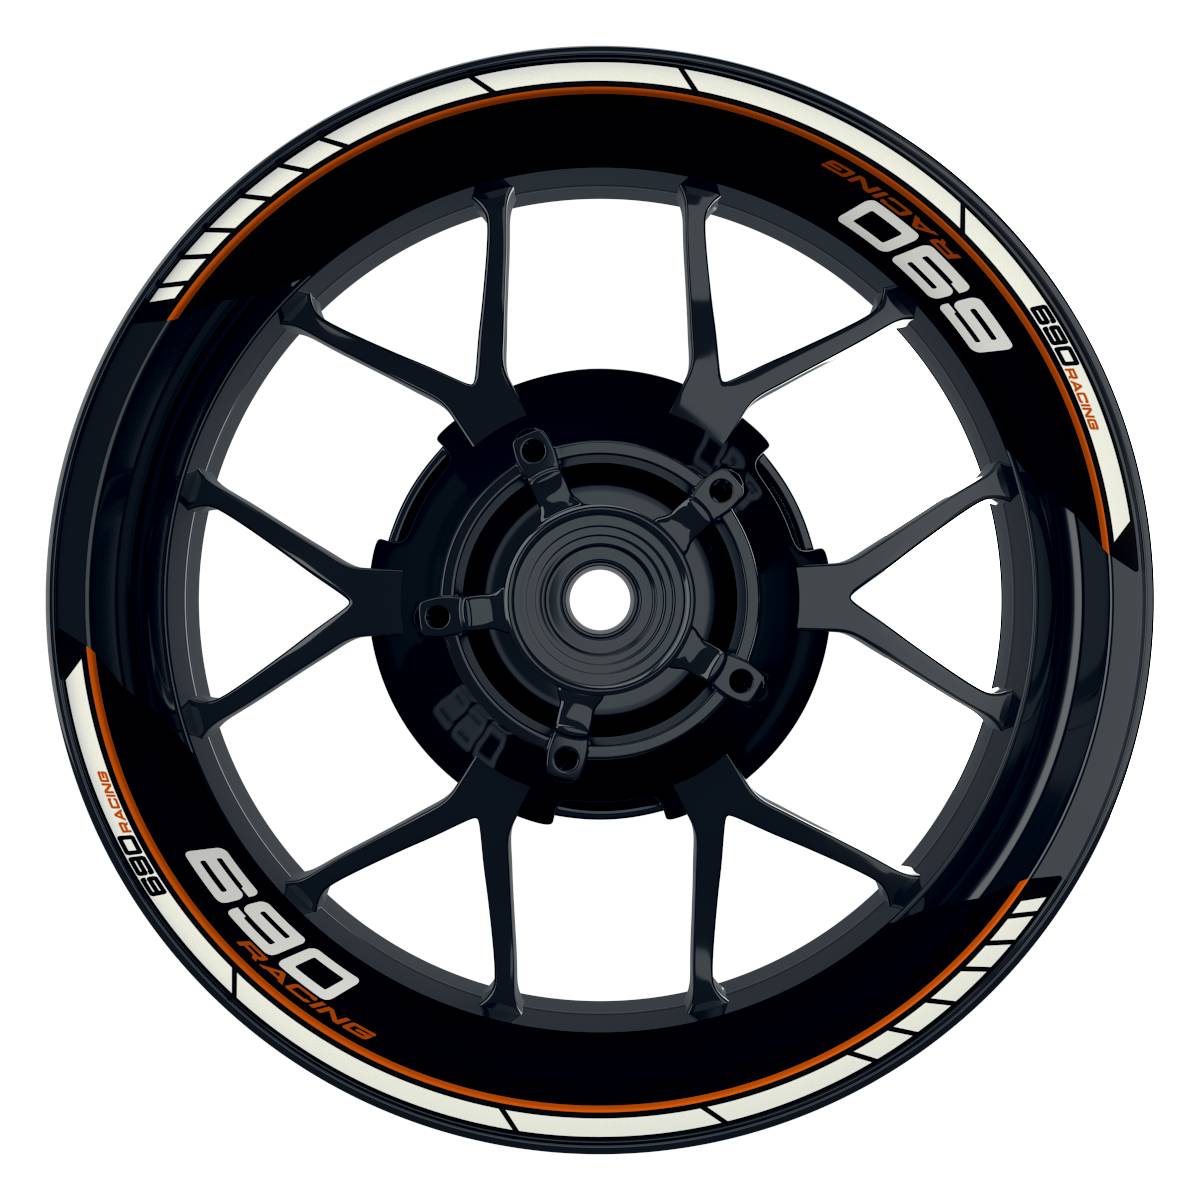 KTM Racing 690 Clean schwarz orange Frontansicht